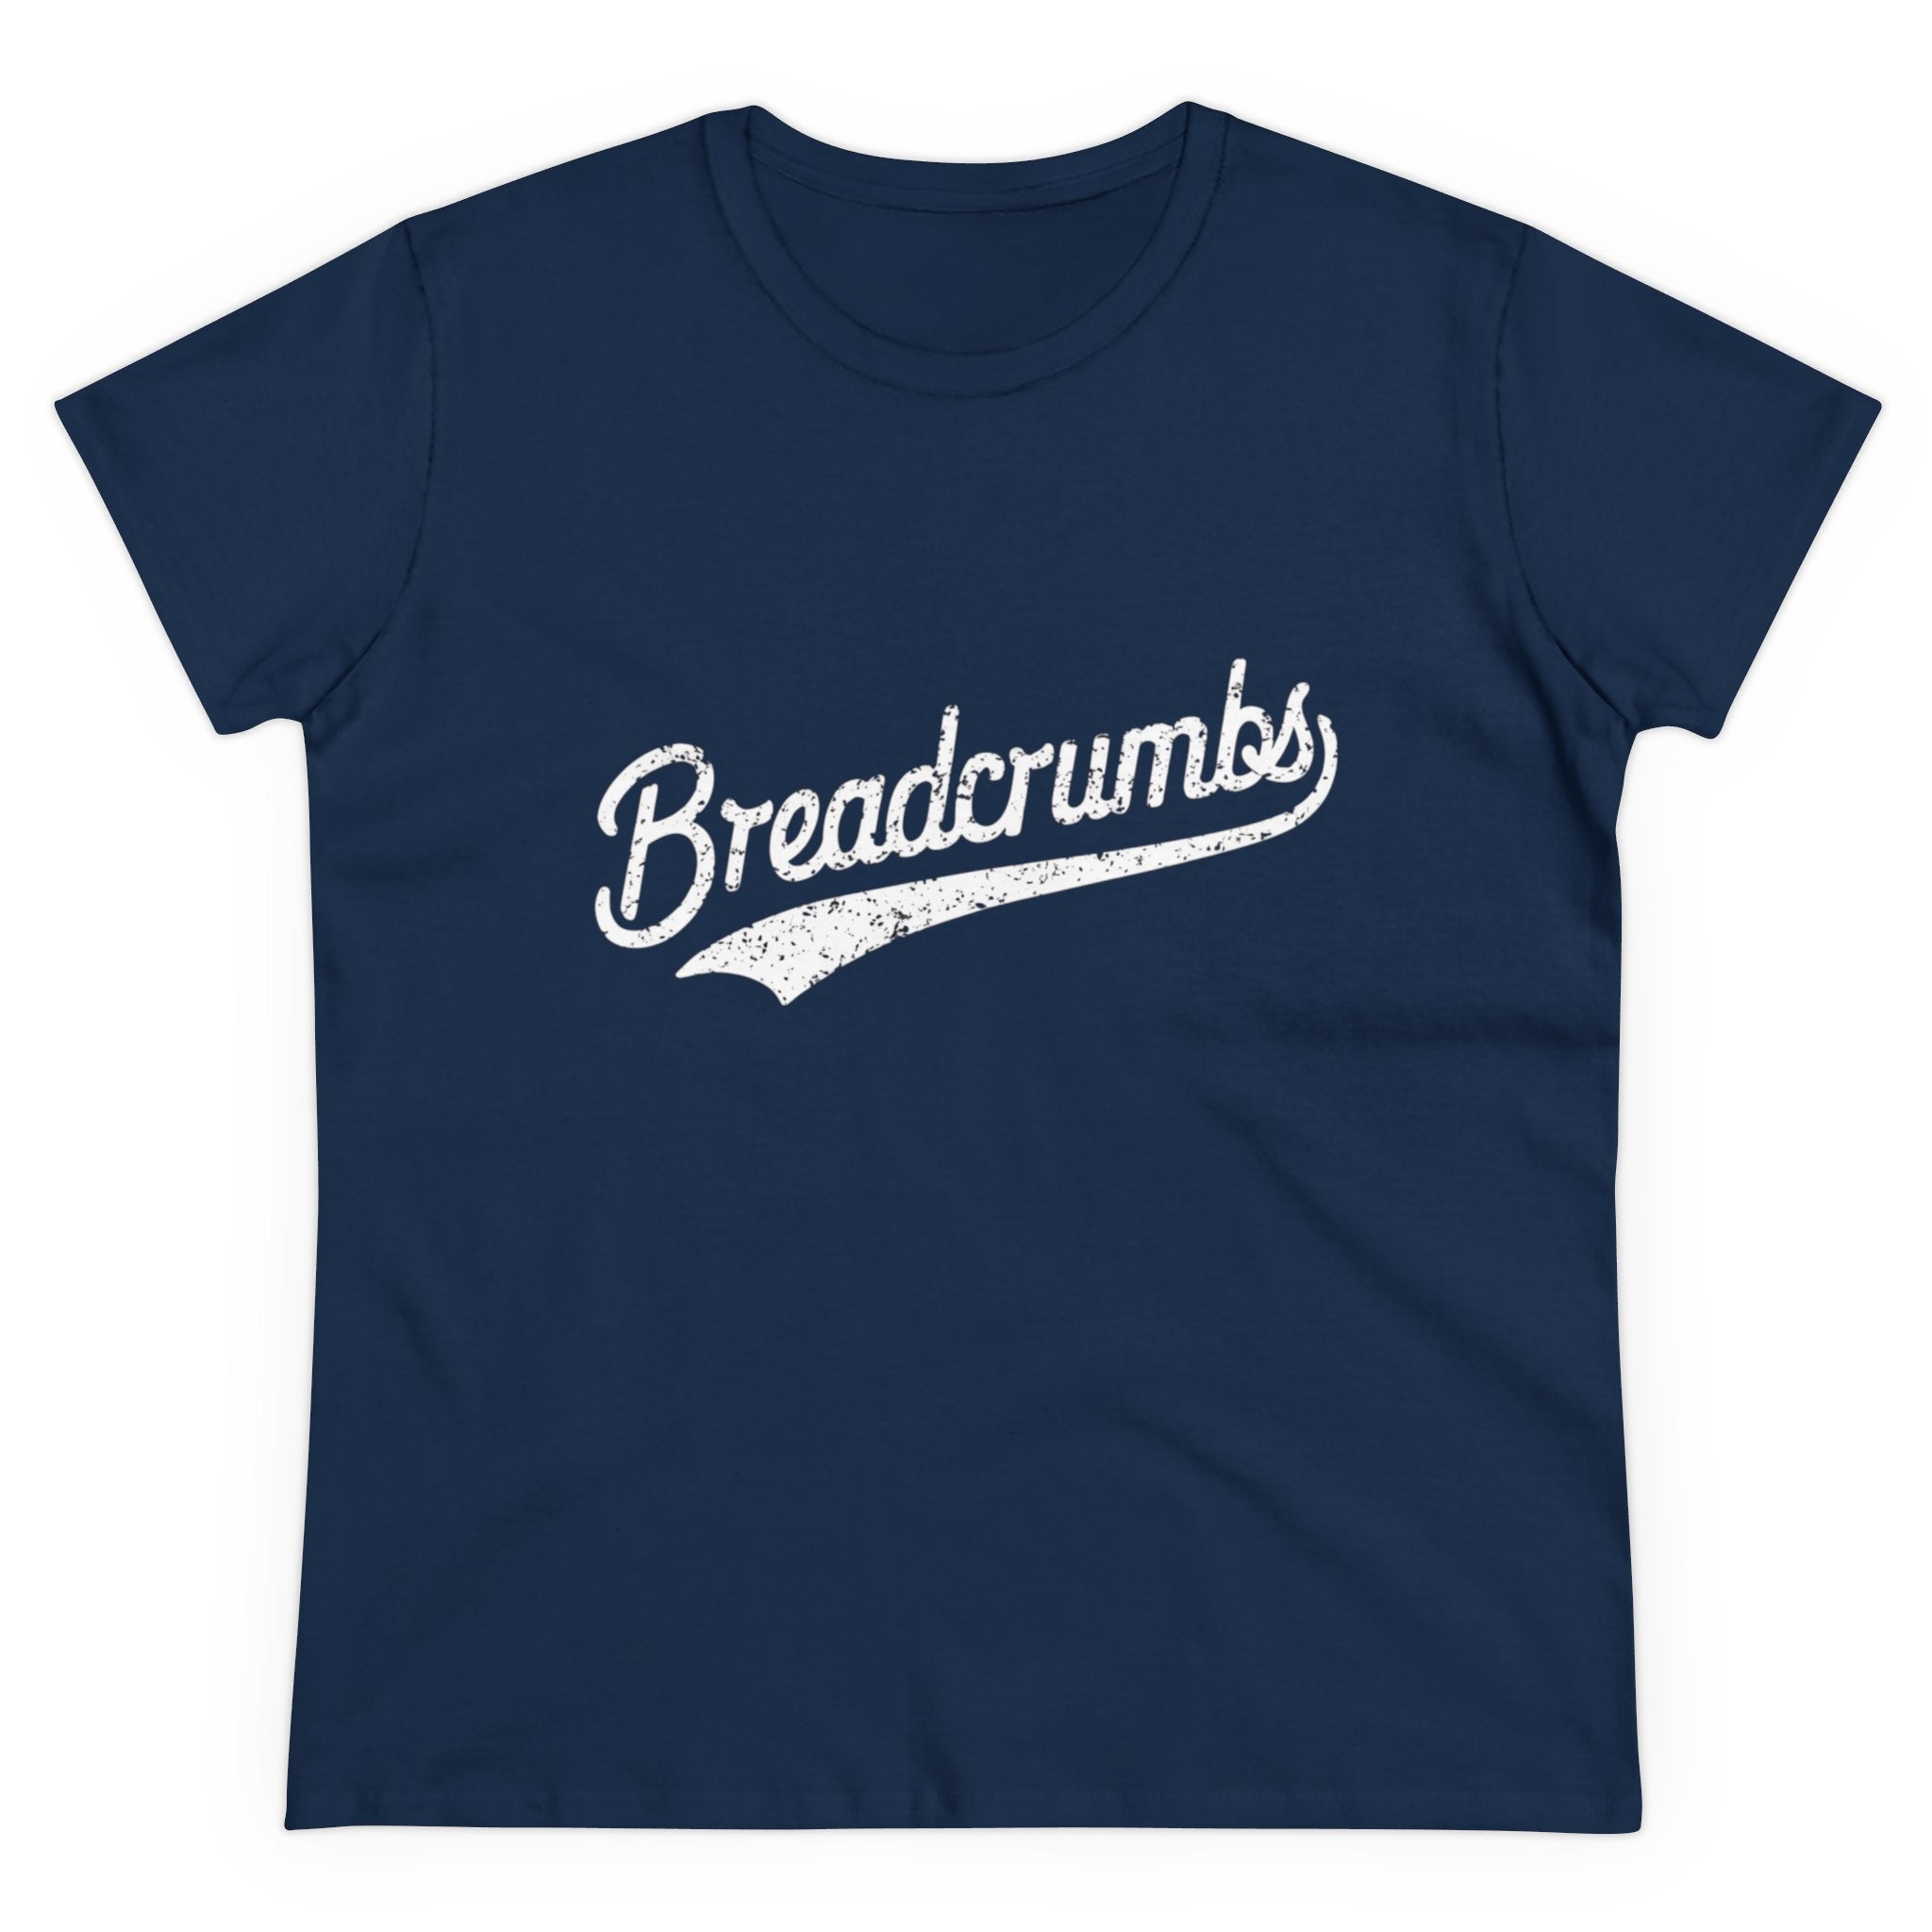 Breadcrumbs - Women's Tee